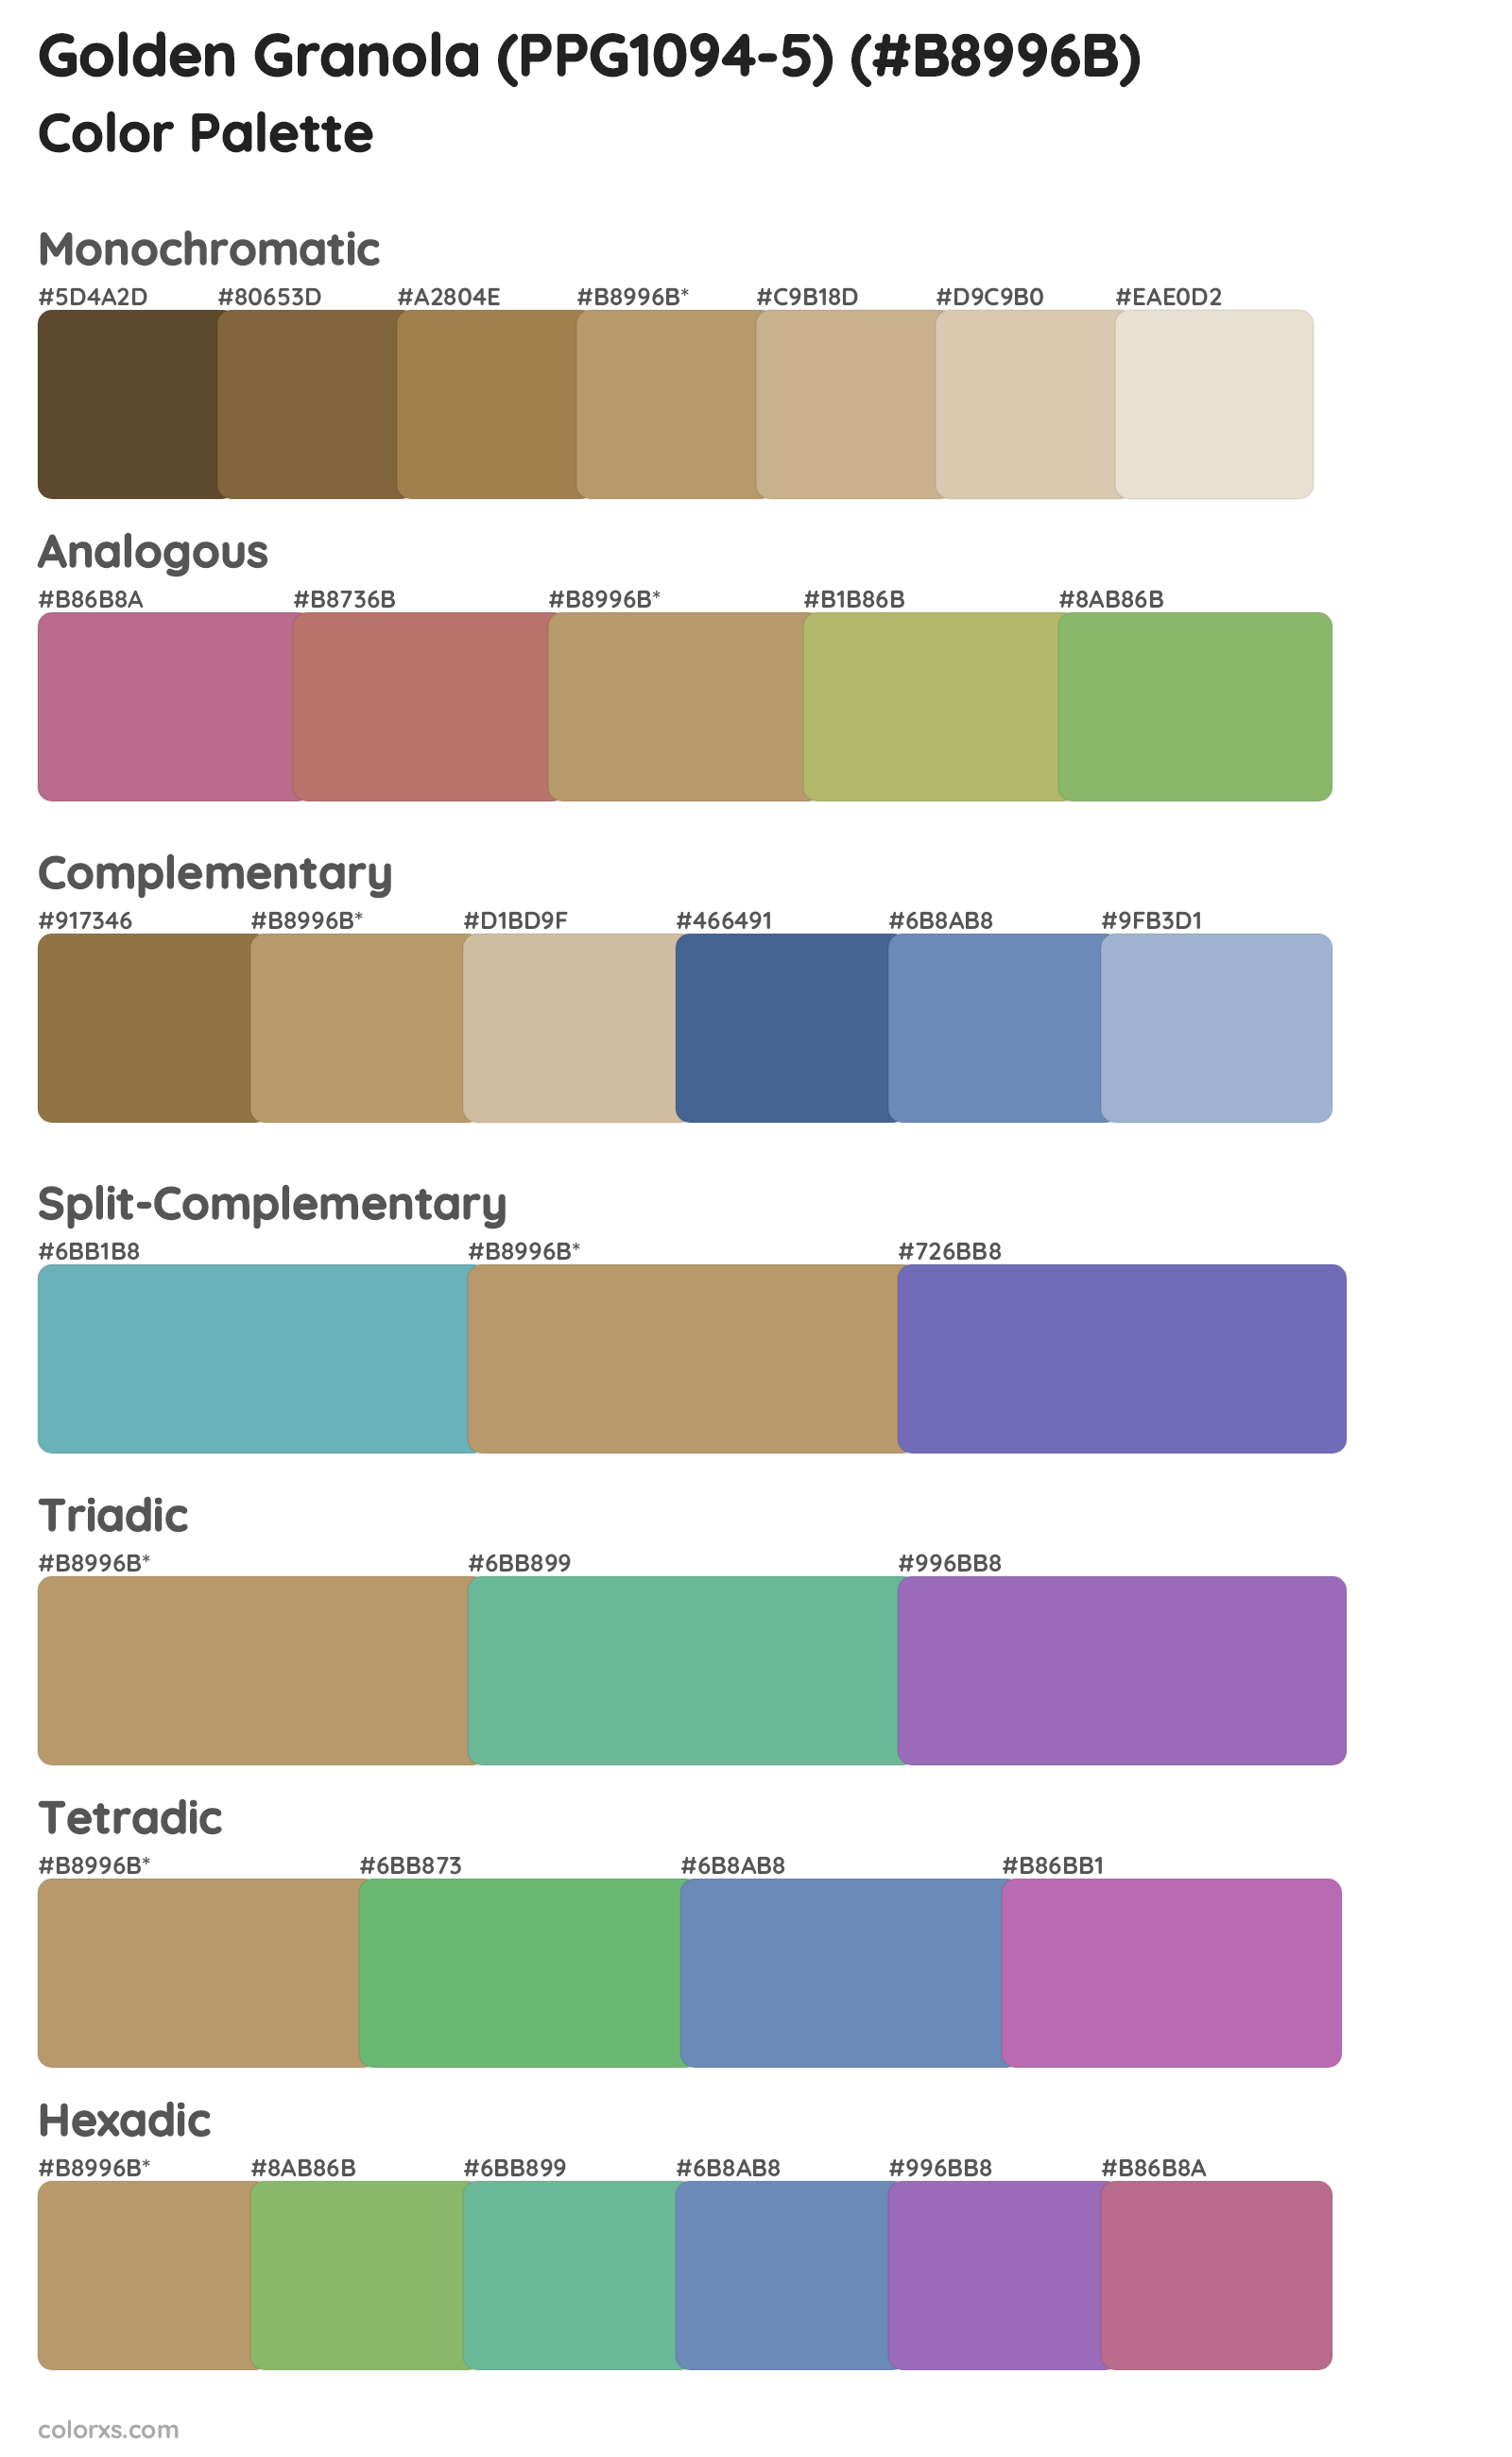 Golden Granola (PPG1094-5) Color Scheme Palettes